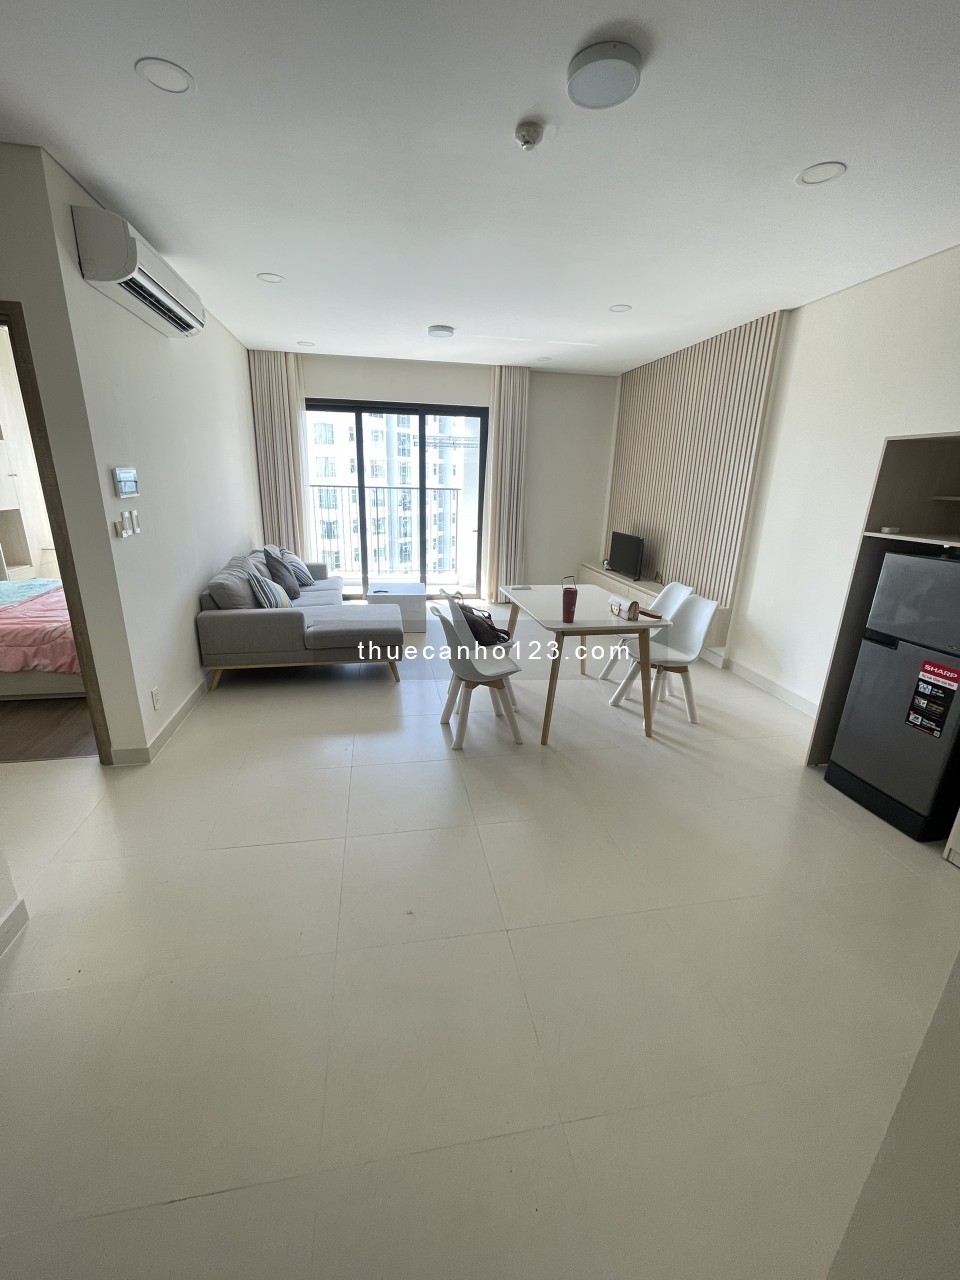 Cho thuê căn hộ chung cư giá rẻ mà đẹp rộng 80m2 - TD1, Bình Dương